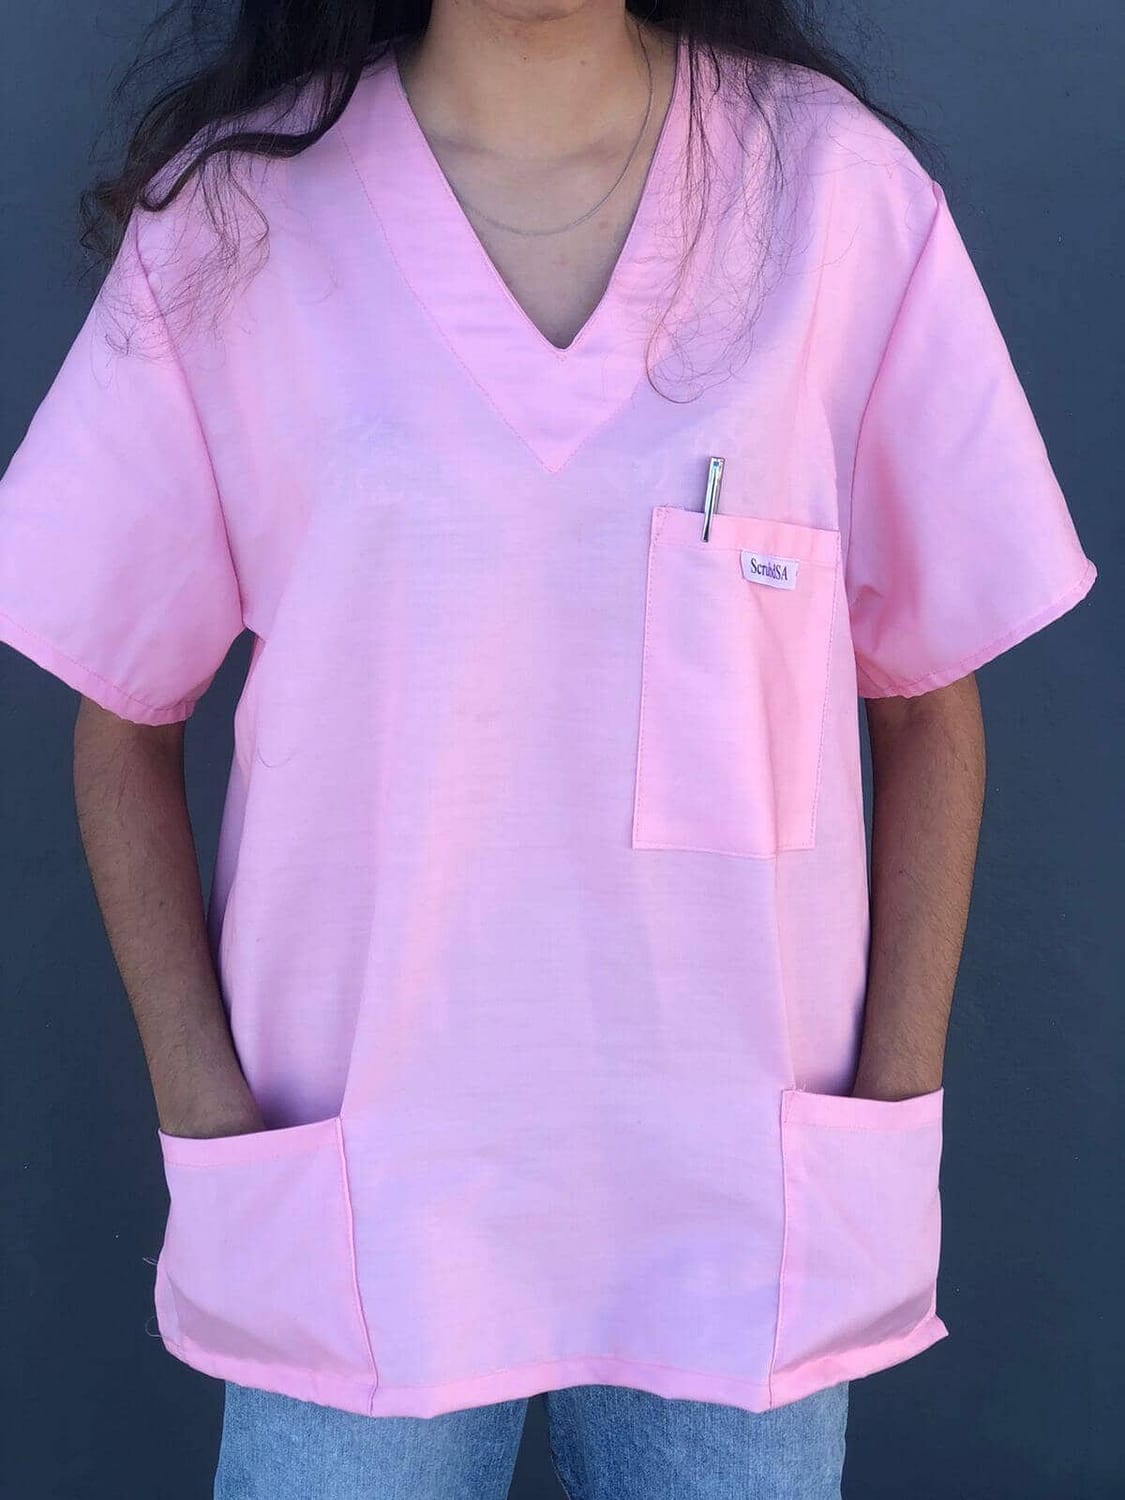 Medical scrubs for sale - Bubblegum Pink SIDE.jpeg ATTACHMENT DETAILS Medical scrubs for sale - Bubblegum Pink FRONT